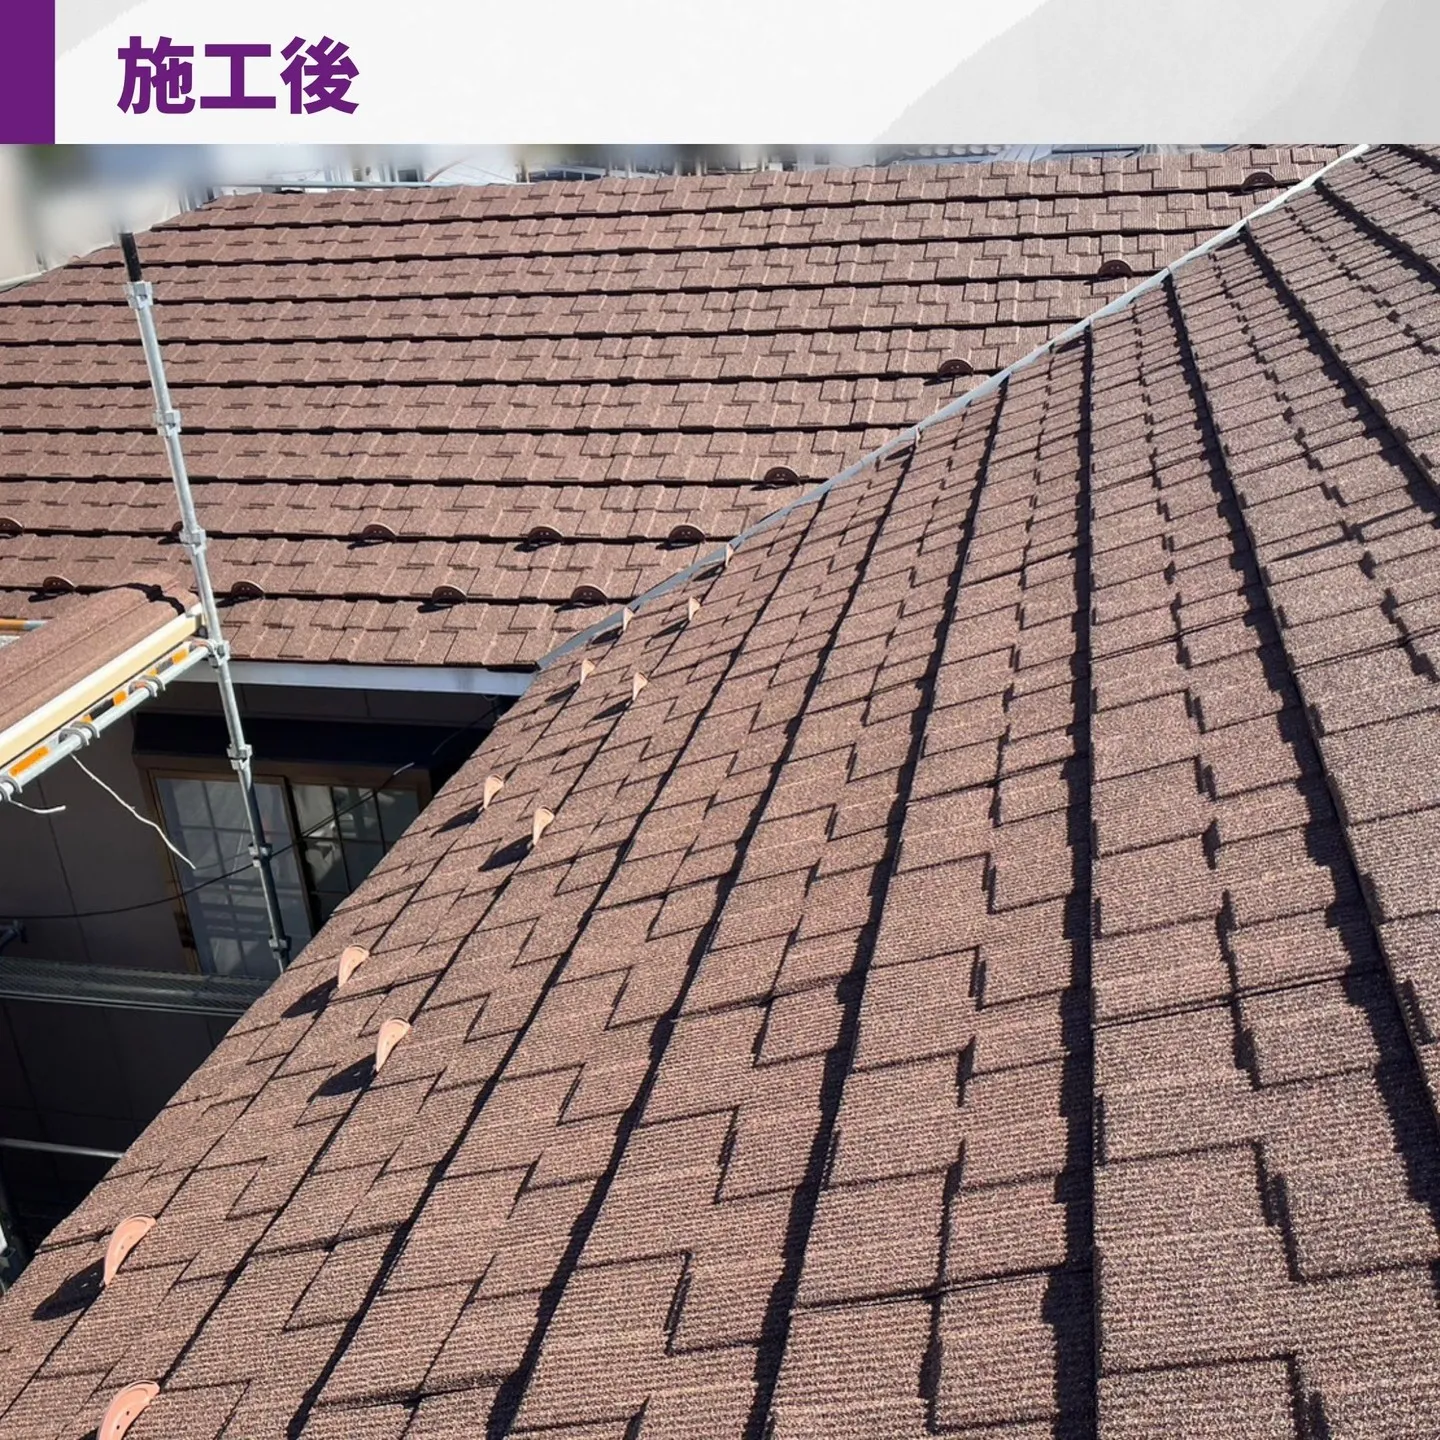 名古屋熱田区、屋根葺き替え工事の施工事例のご紹介です。